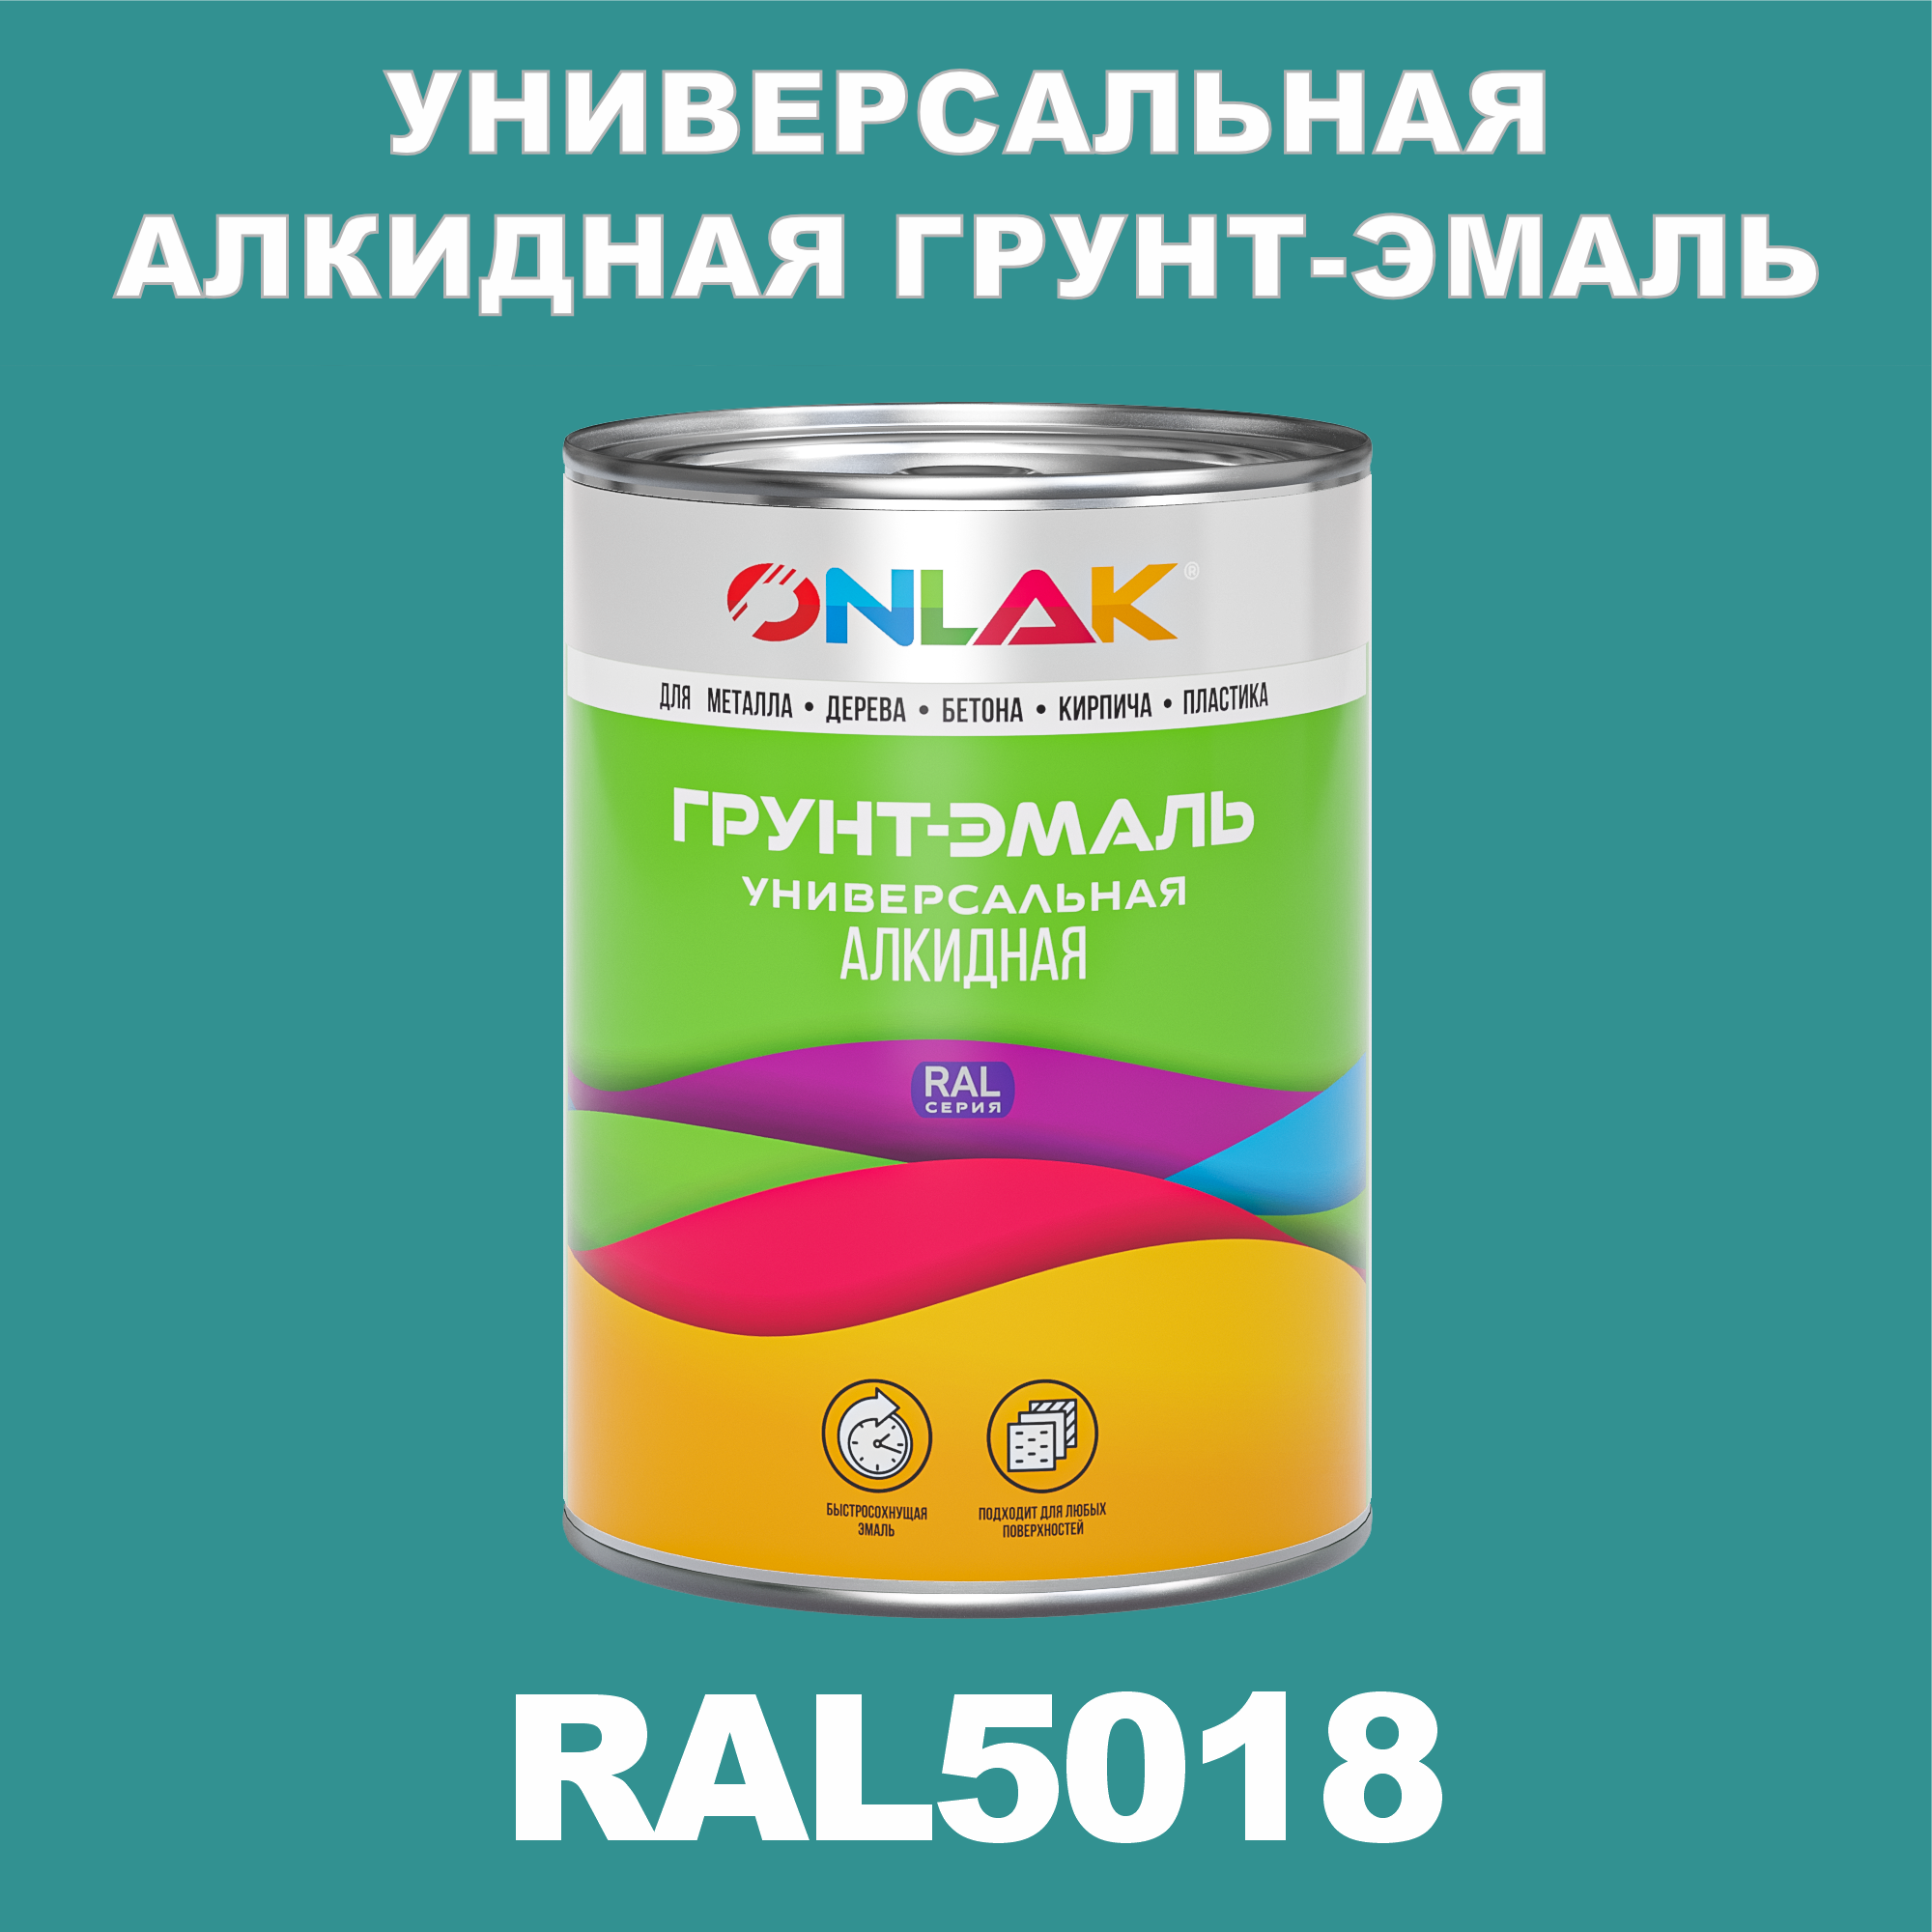 Грунт-эмаль ONLAK 1К RAL5018 антикоррозионная алкидная по металлу по ржавчине 1 кг